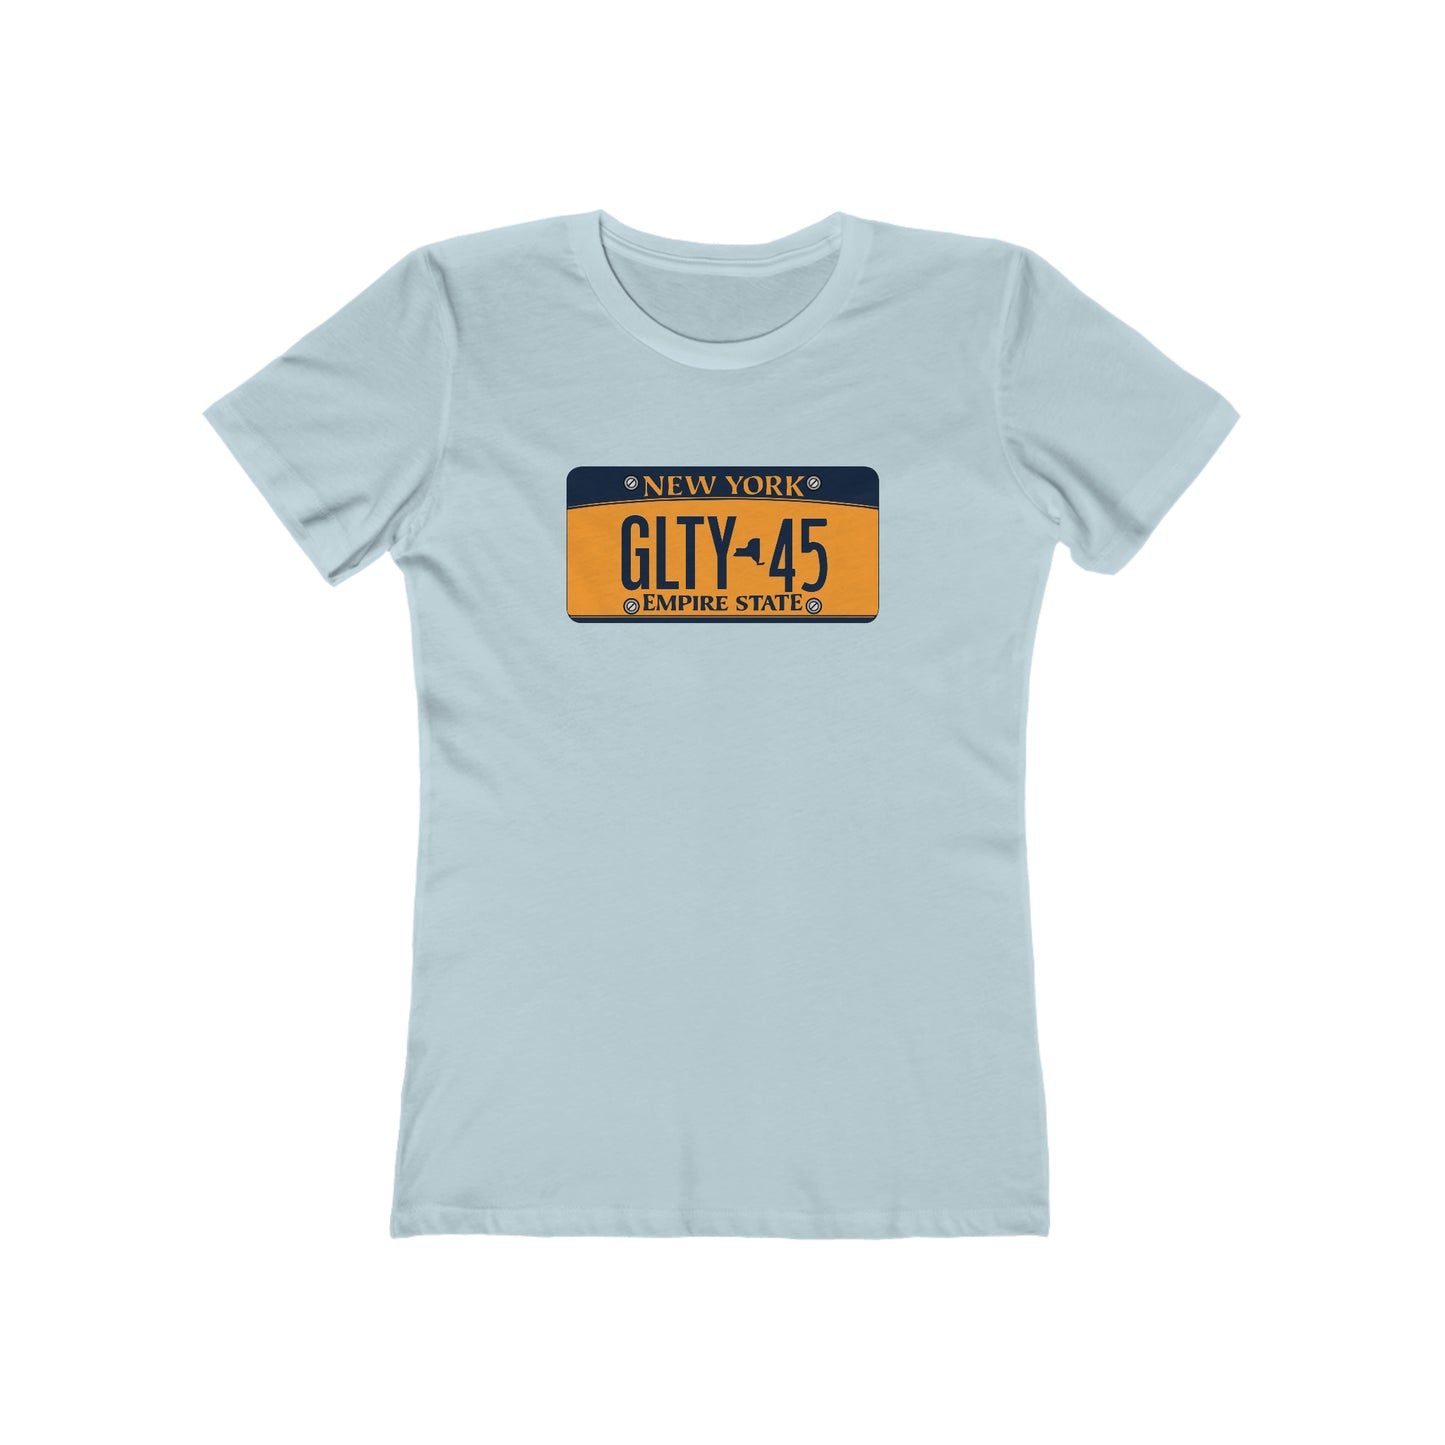 GLTY 45 New York Plate - Women's T-Shirt